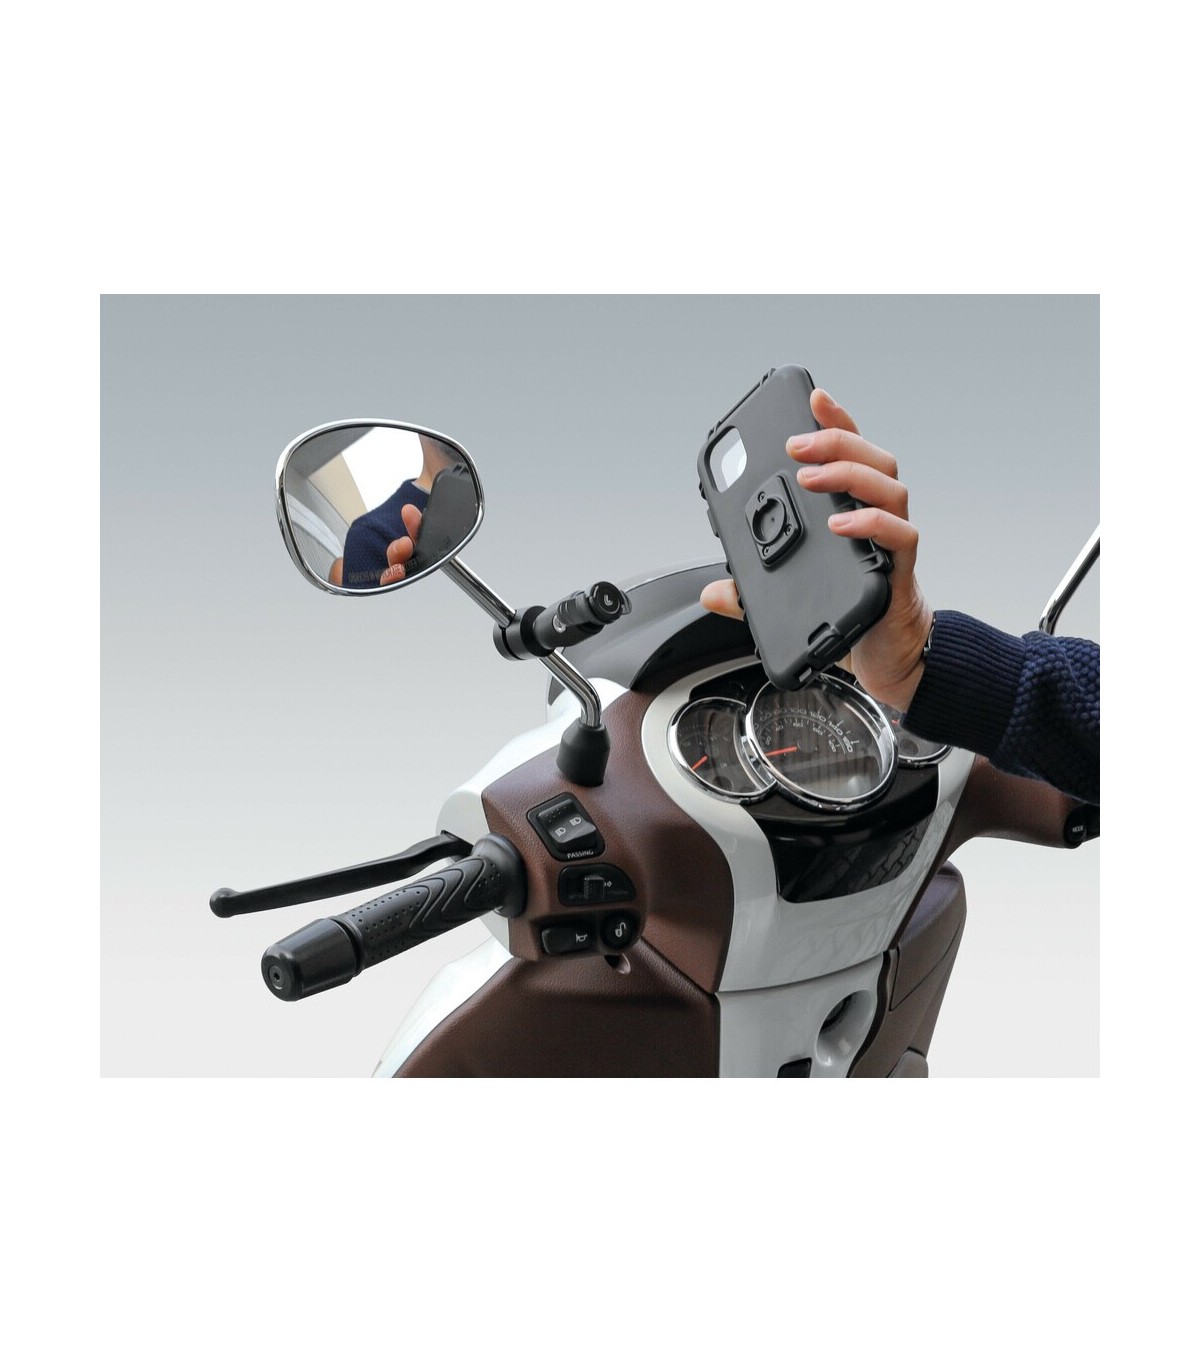 Supporto Porta Telefono Moto Scooter Da Specchietto o Traversino 9 A 14mm  LAMPA MIRROR - 90438